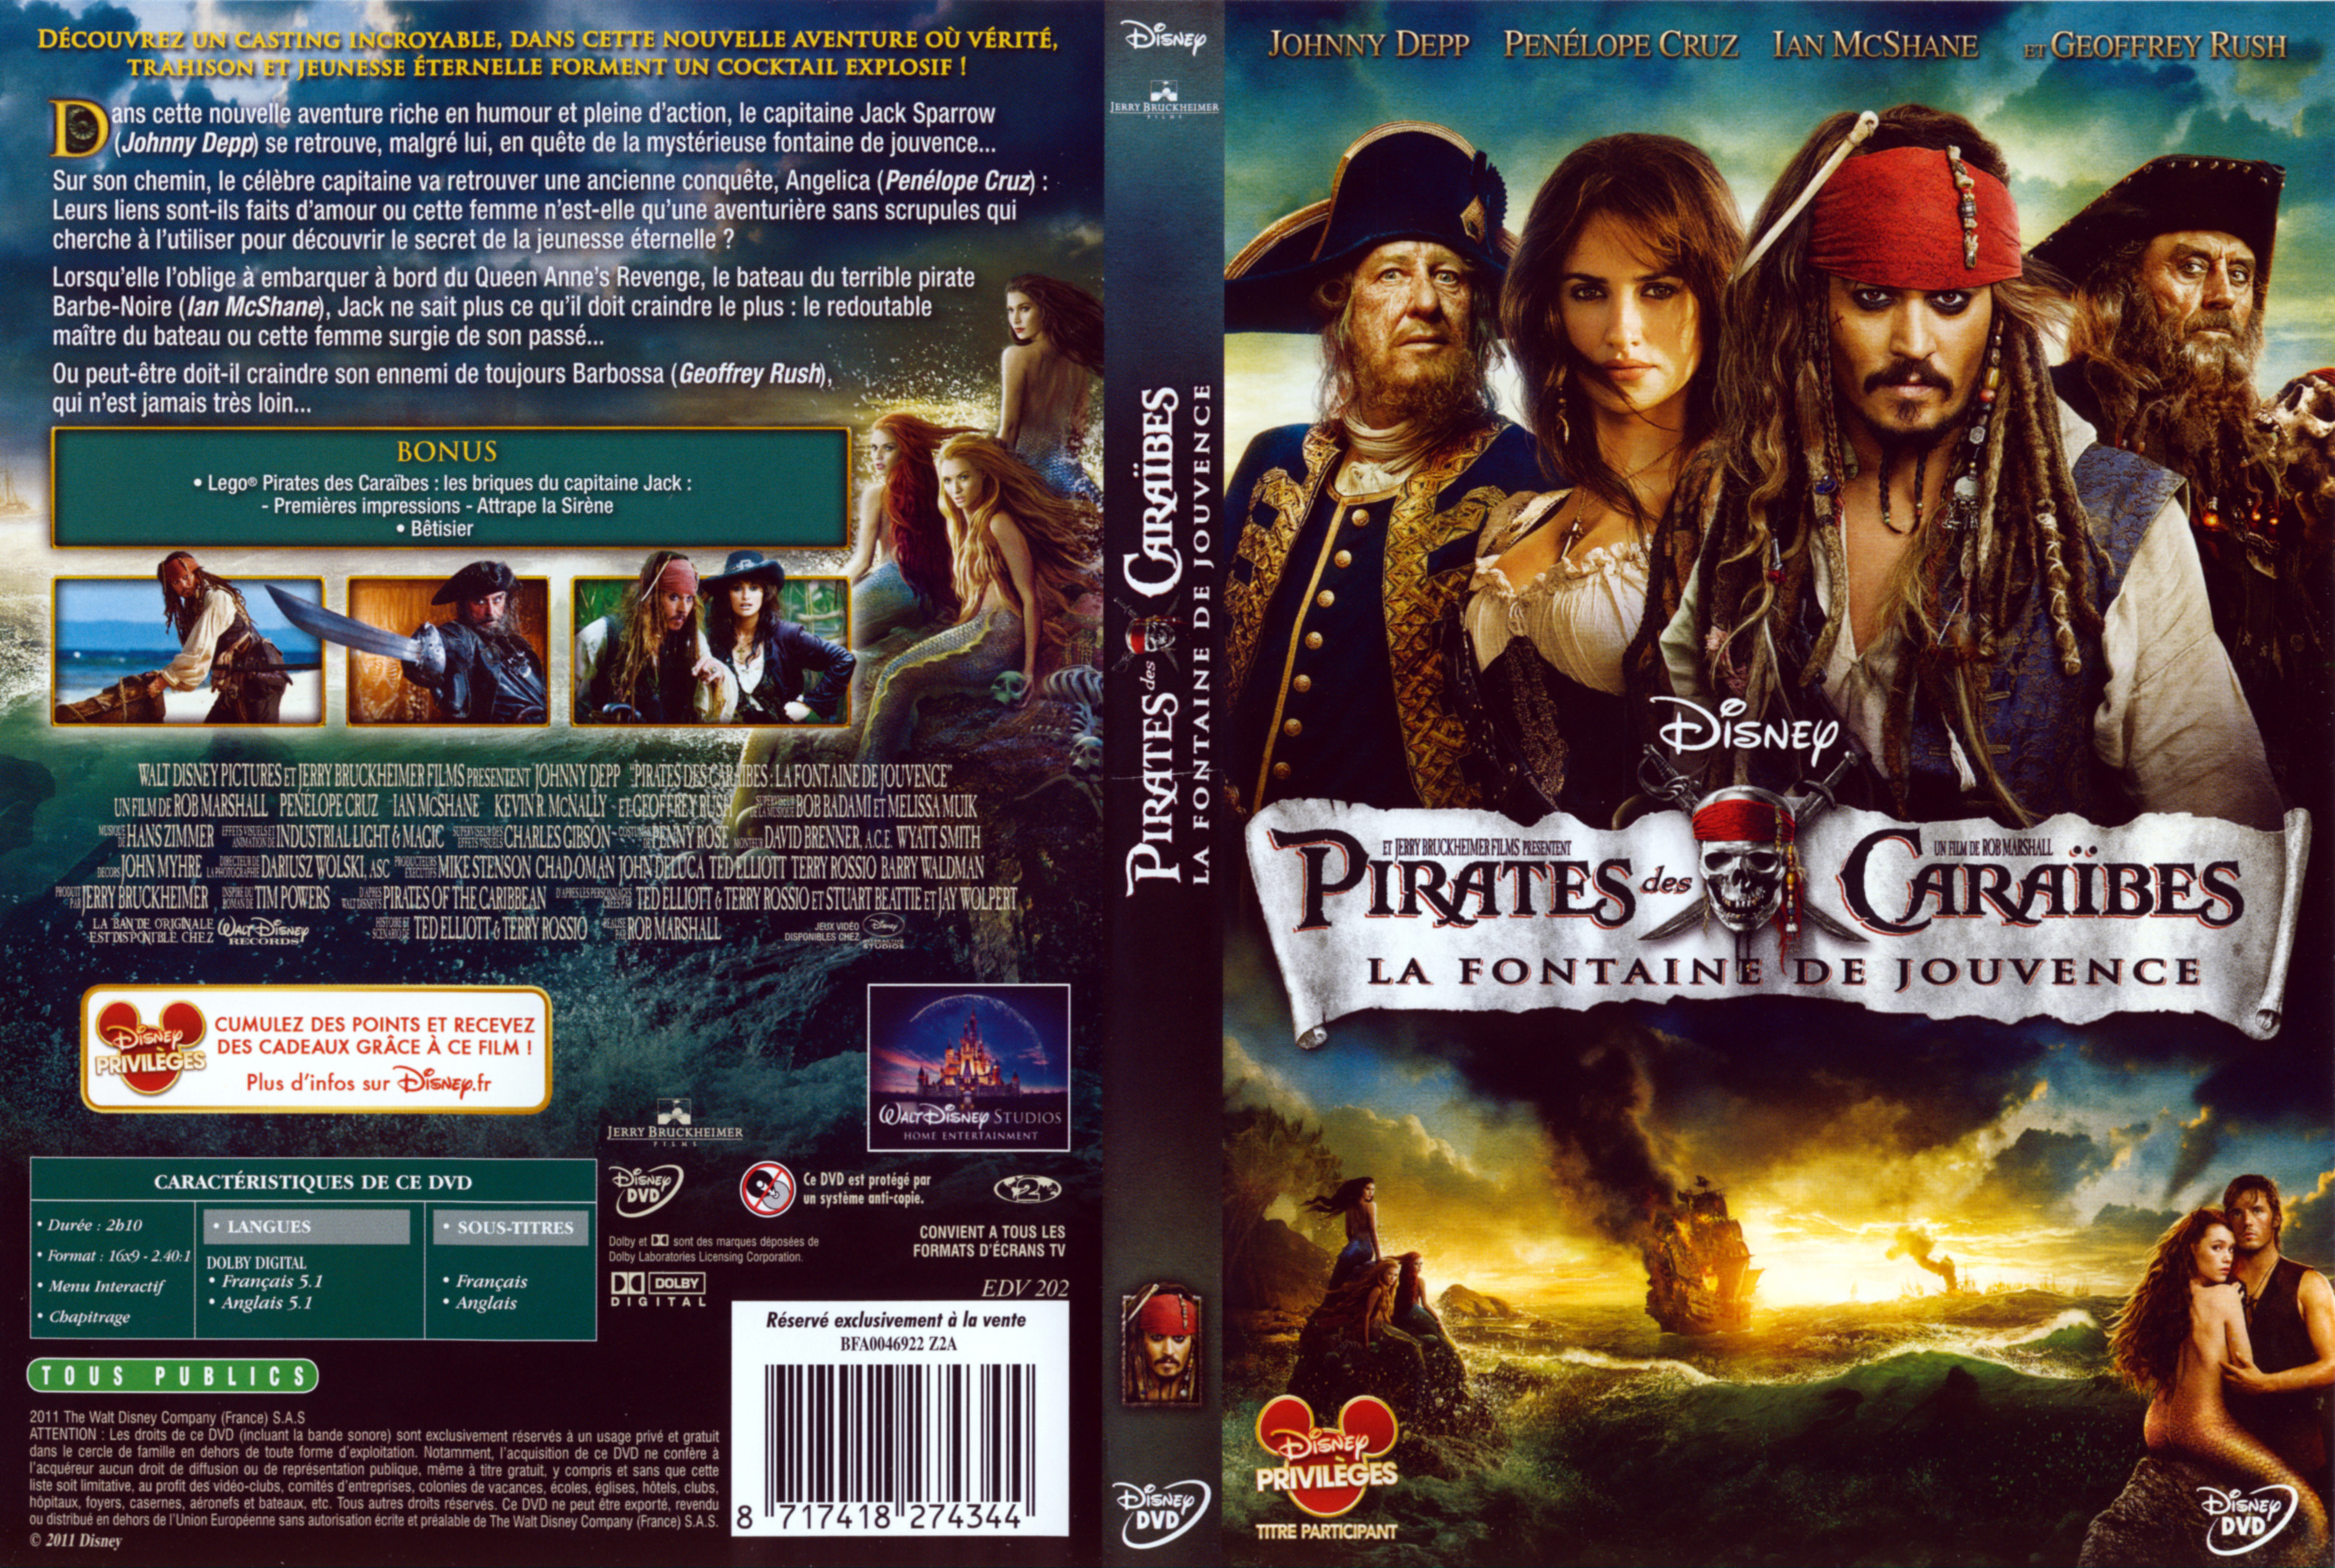 Jaquette DVD Pirates des Caraibes la Fontaine de Jouvence